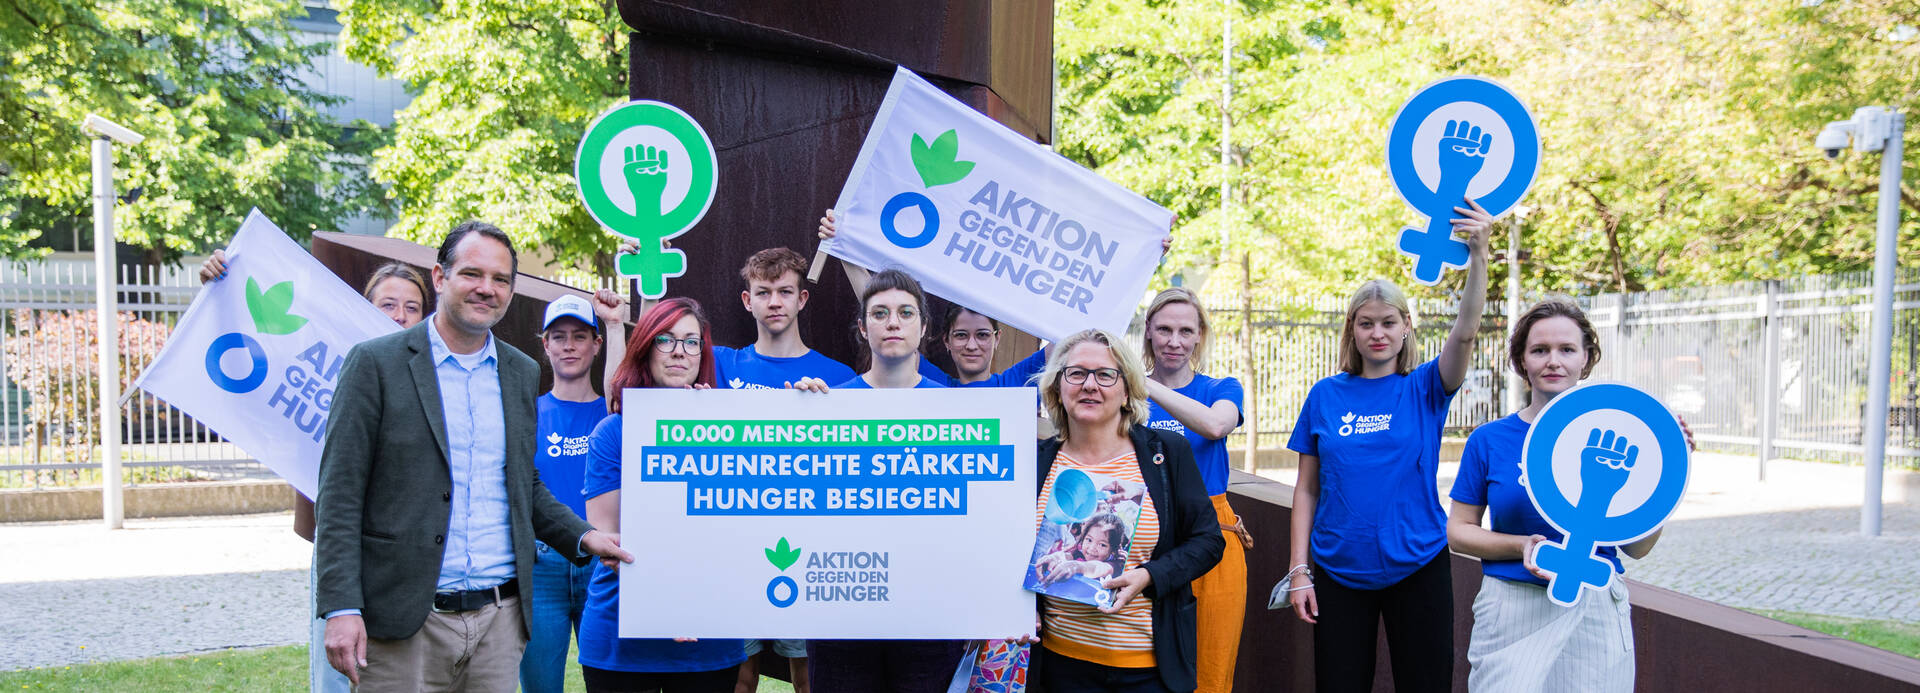 Svenja Schulze, Bundesministerin für wirtschaftliche Zusammenarbeit und Entwicklung, mit Aktion gegen den Hunger bei der Übergabe der Petition "Frauenrechte stärken, Hunger besiegen!"